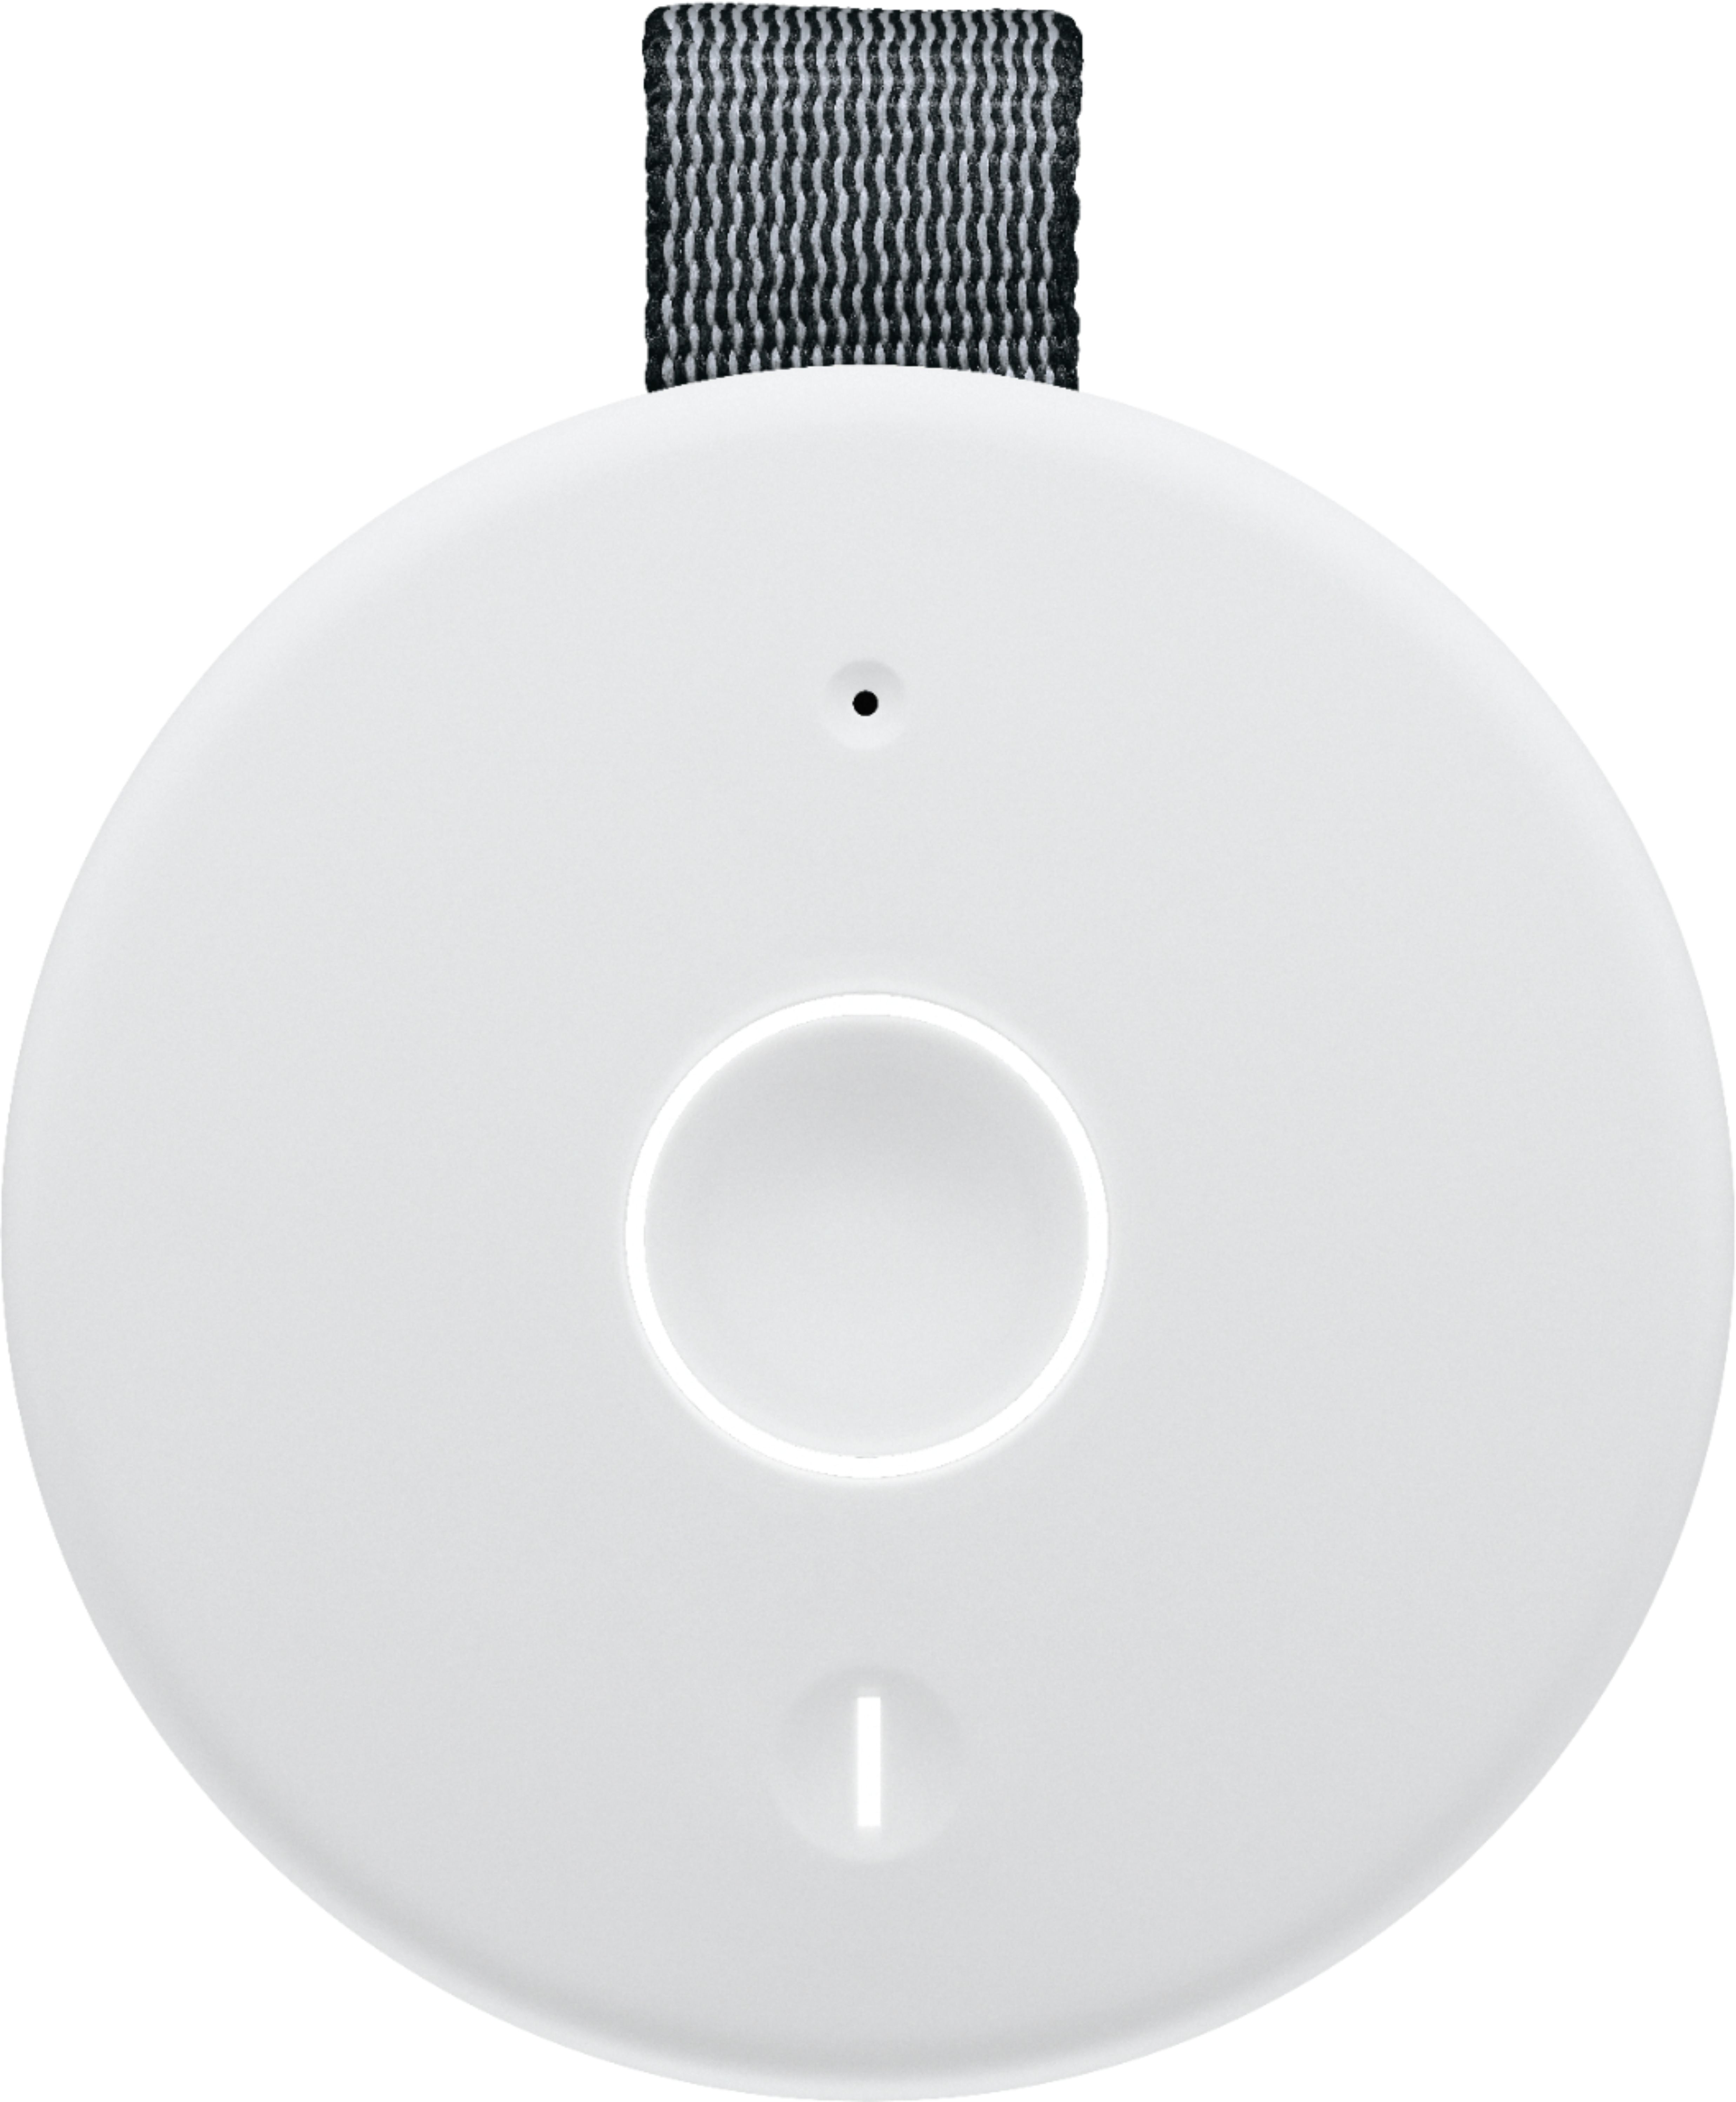 Ultimate Ears MEGABOOM 3 Portable Wireless Bluetooth Speaker with  Waterproof/Dustproof Design Night Black 984-001390 - Best Buy